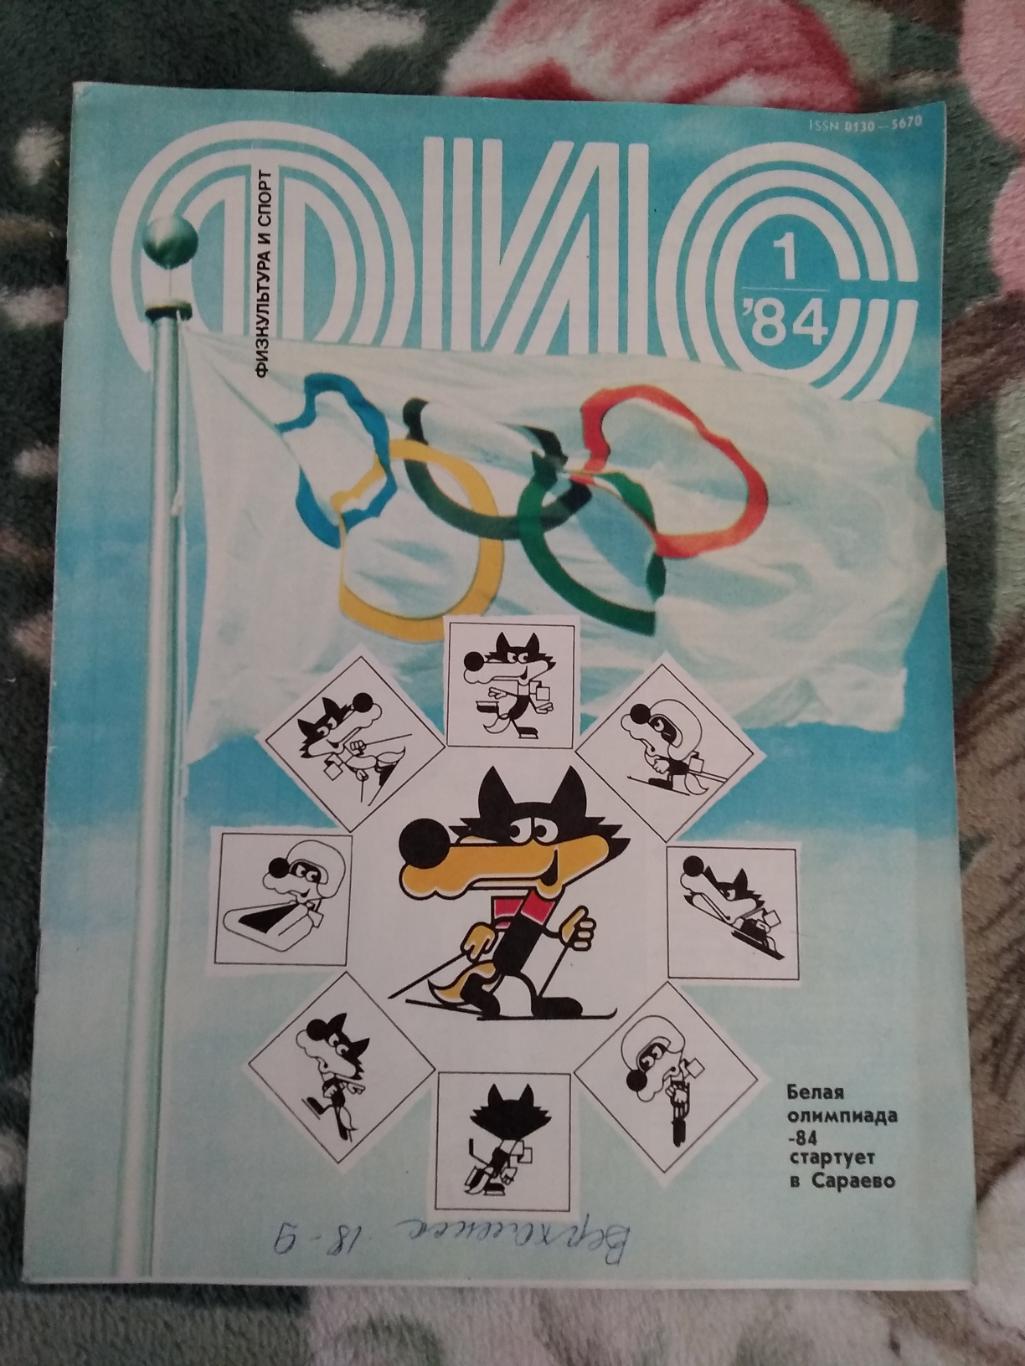 Журнал.Физкультура и спор № 1 1984 г. (ФиС).